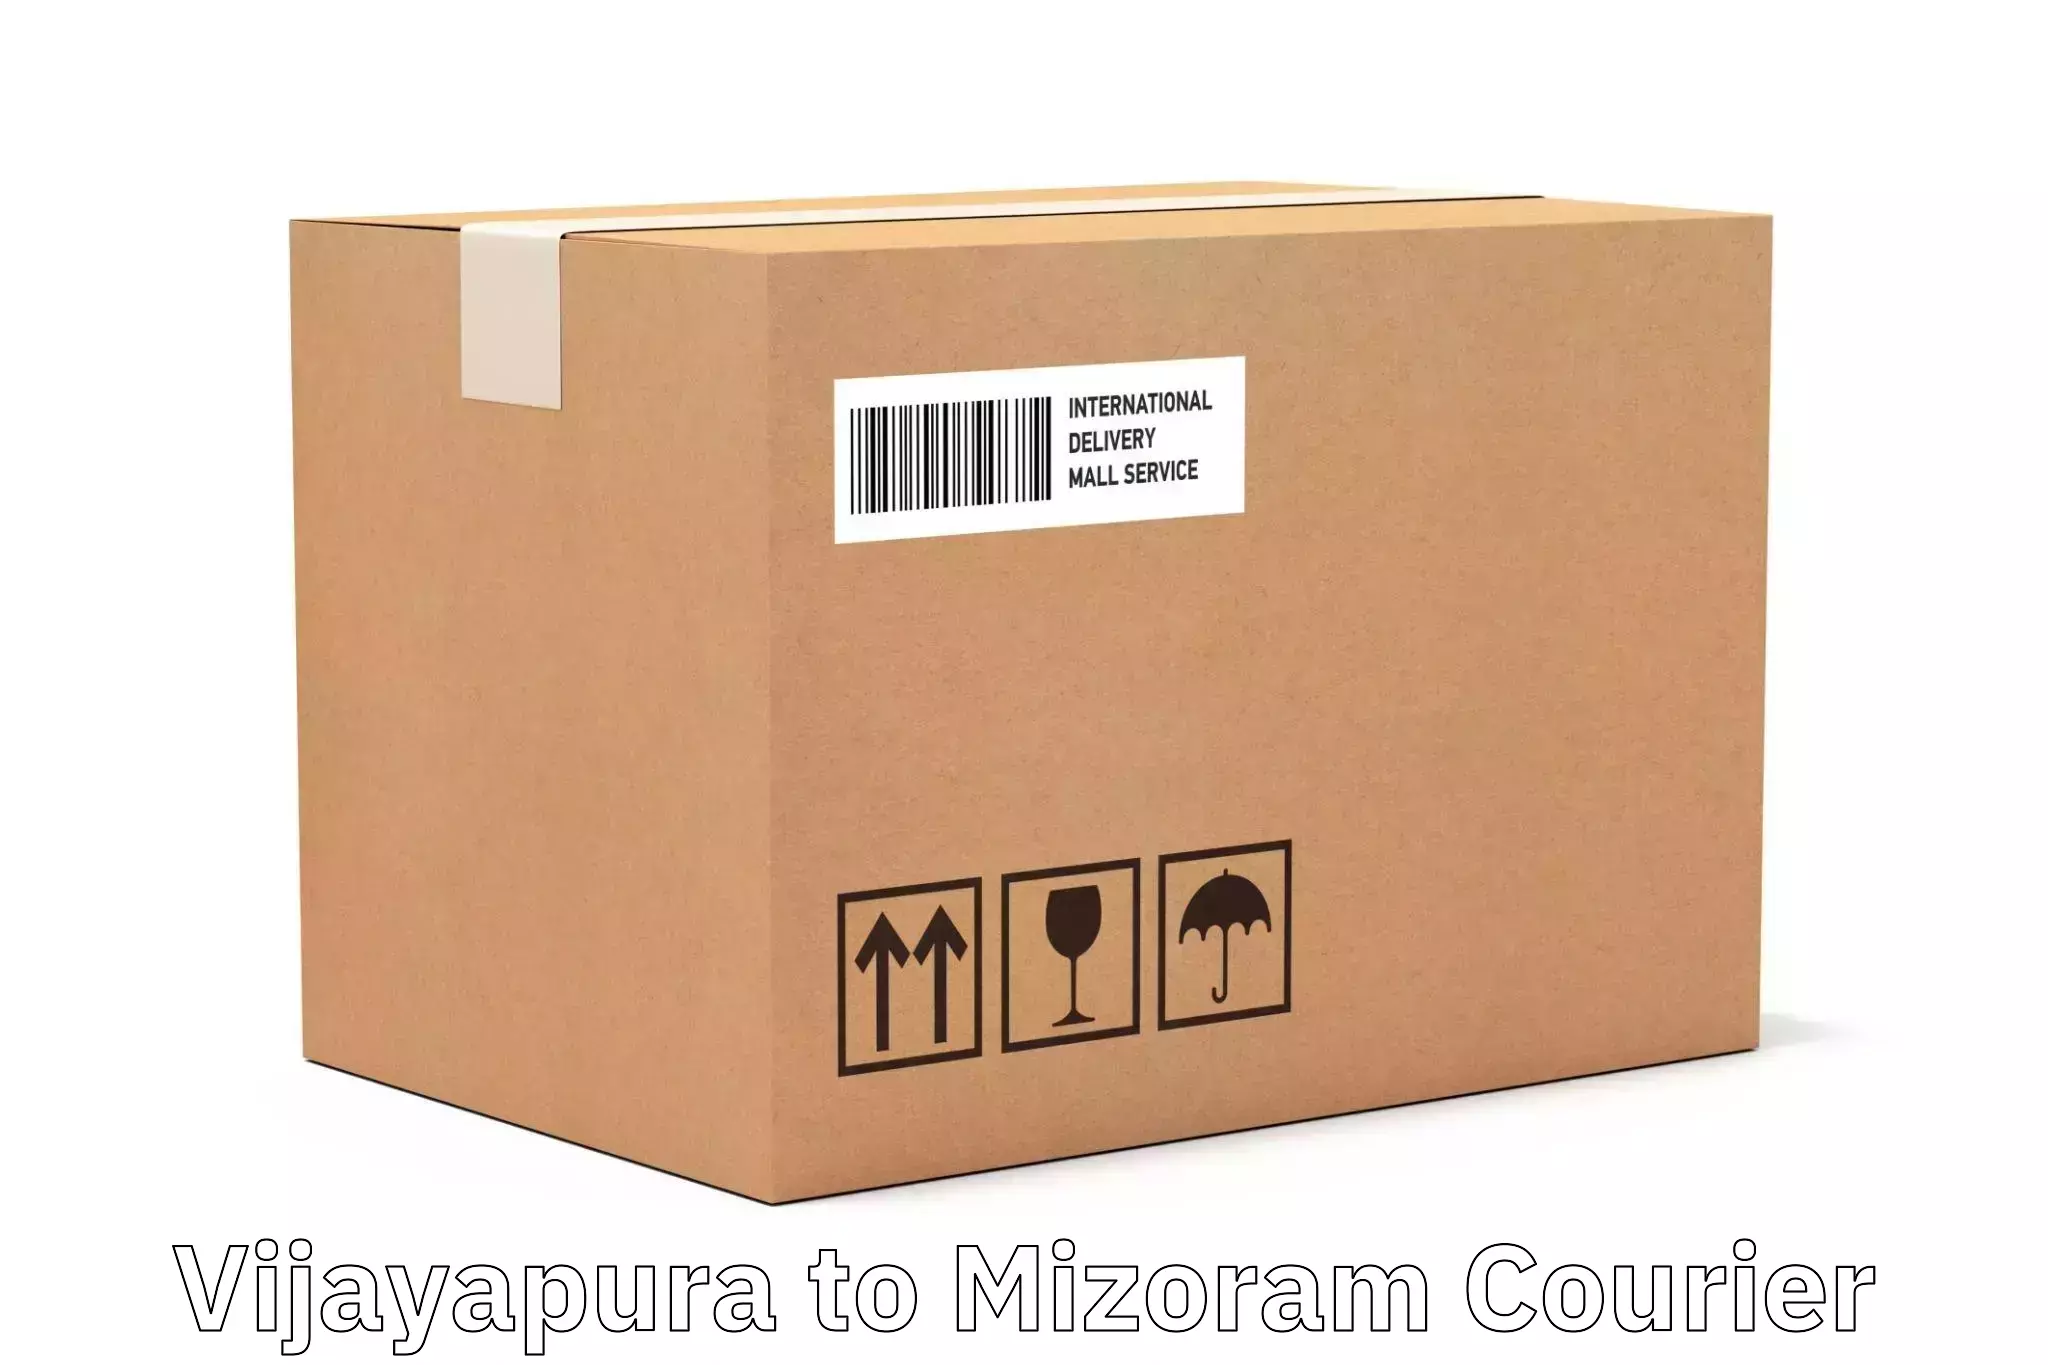 Versatile courier offerings Vijayapura to Aizawl